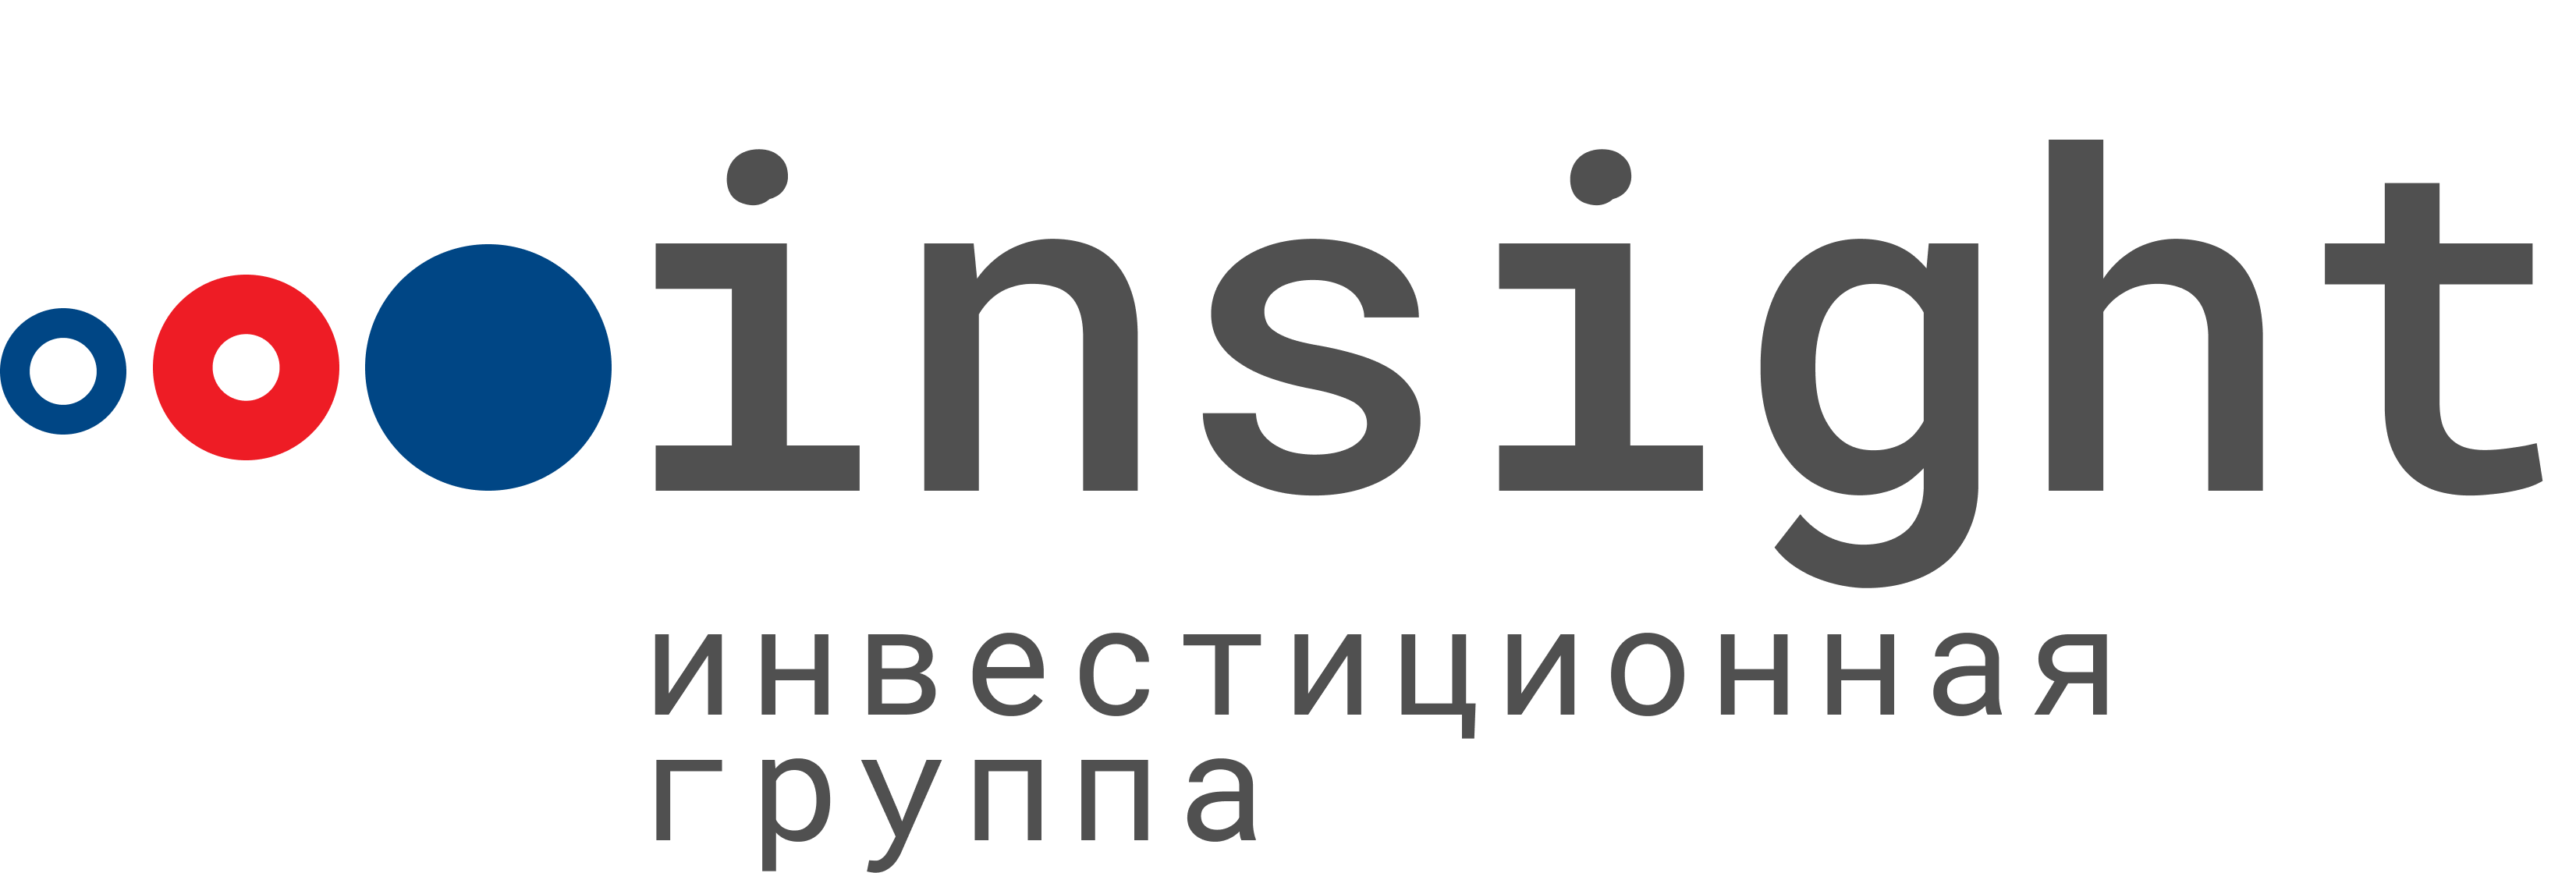 Ооо инсайт. Insight инвестиционная группа. Инвестиционная группа Insight logo. Инвестиционная компания «Инсайт» логотип.